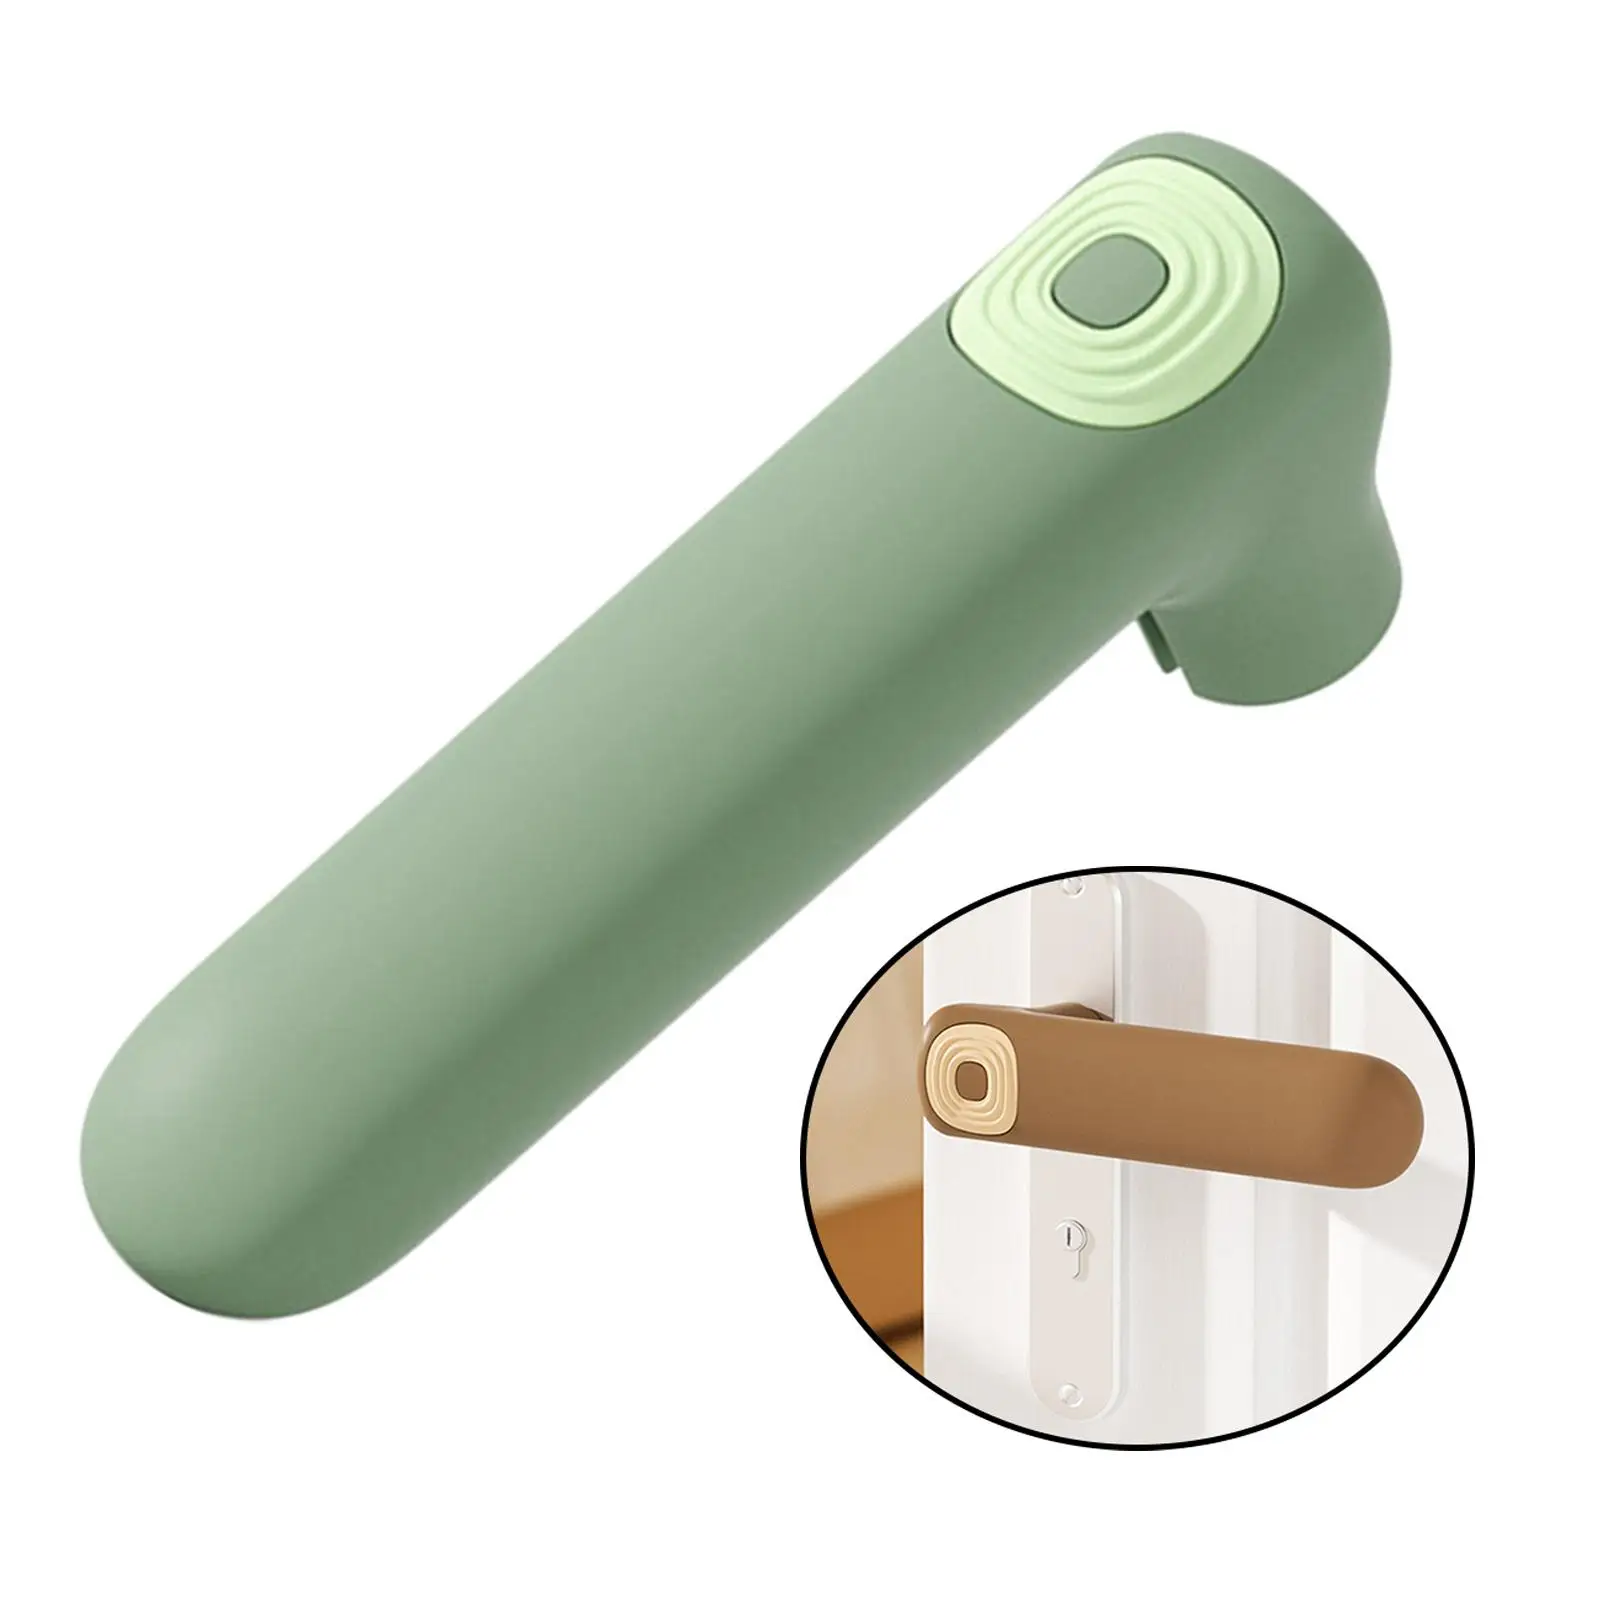 Silicone handle for door Protective Cover, Door Knob Cover, handle for door Protect Sleeve for Home Bedroom Living Room